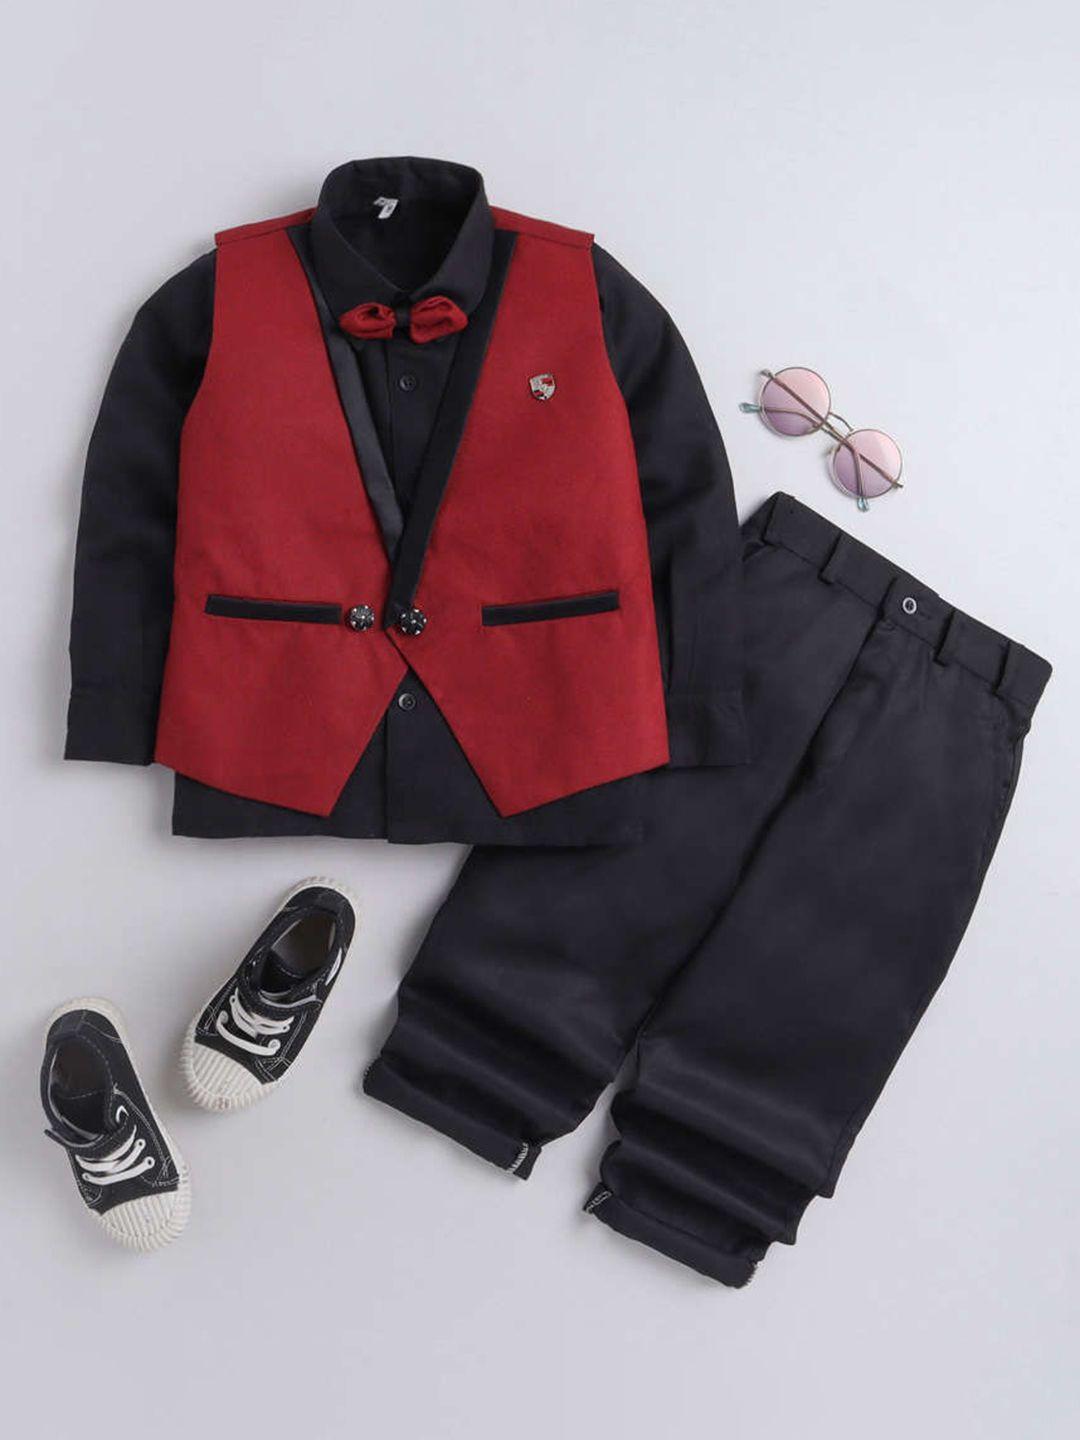 dkgf fashion boys red & black 3 piece suit